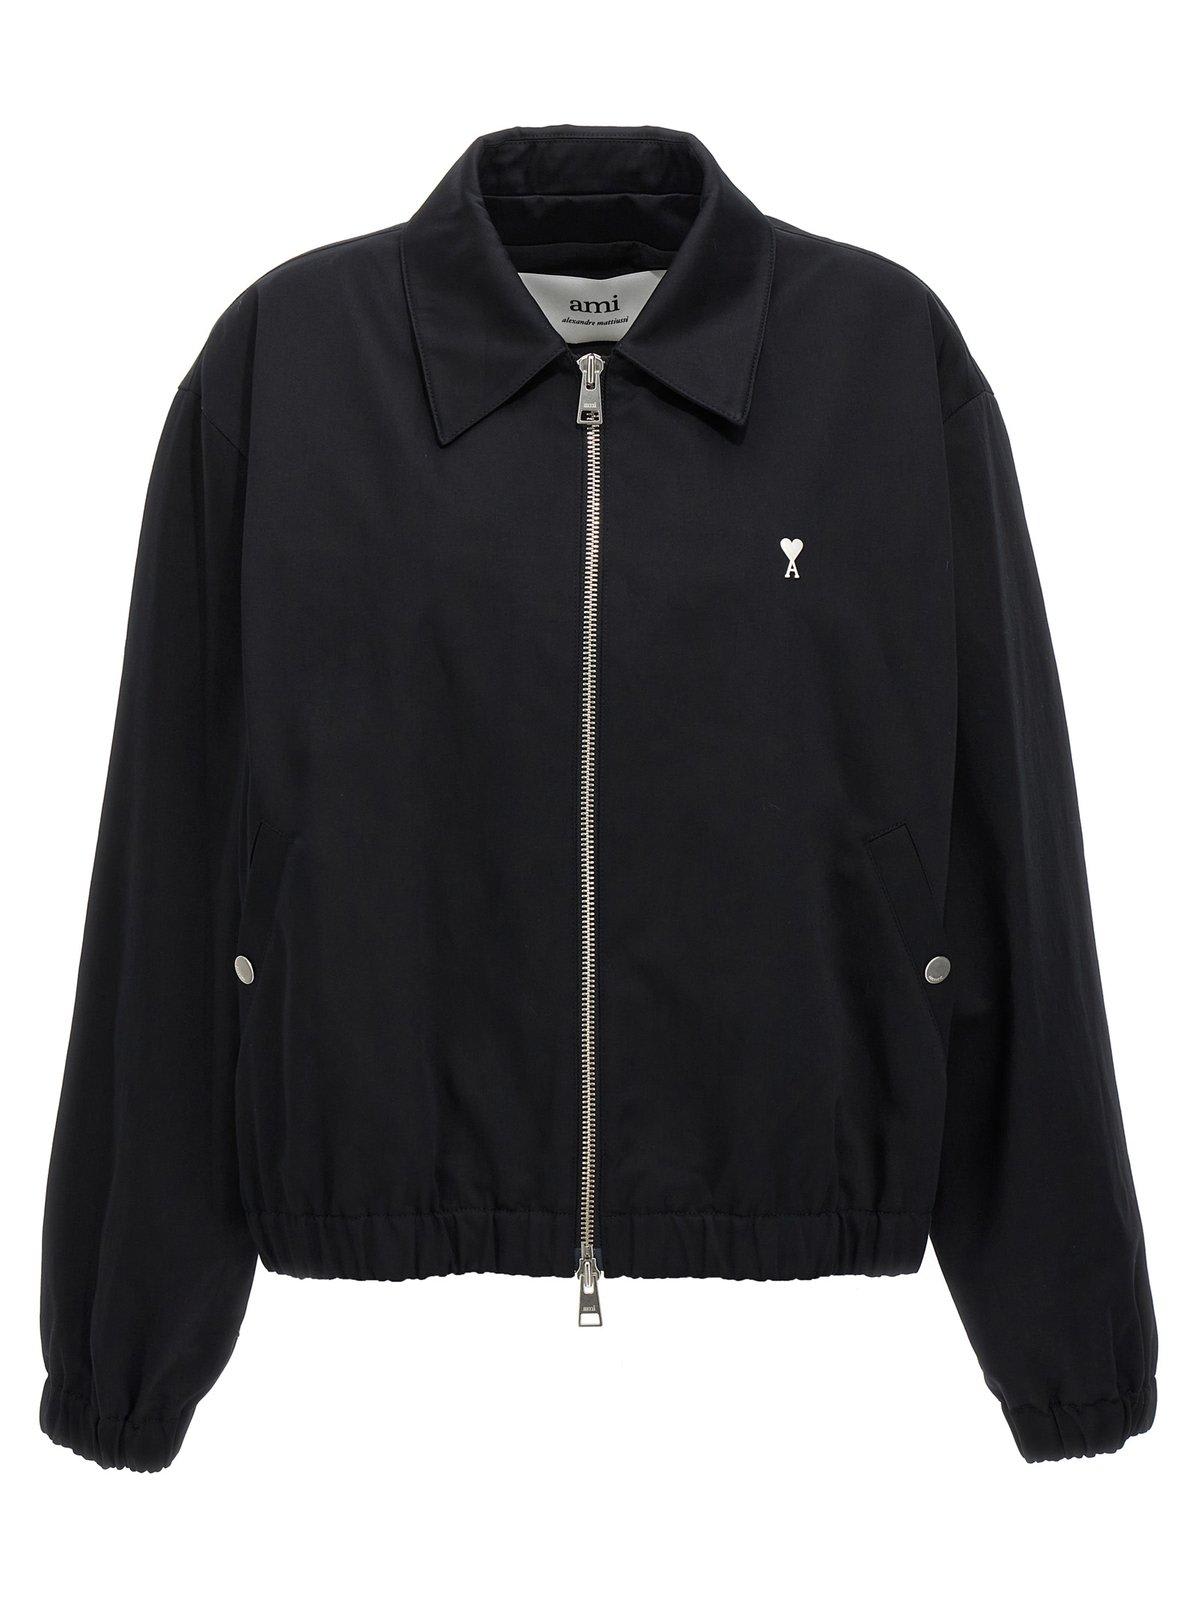 Ami Alexandre Mattiussi Paris Ami De Coeur Zipped Jacket - BLACK - male - Size: Extra Large